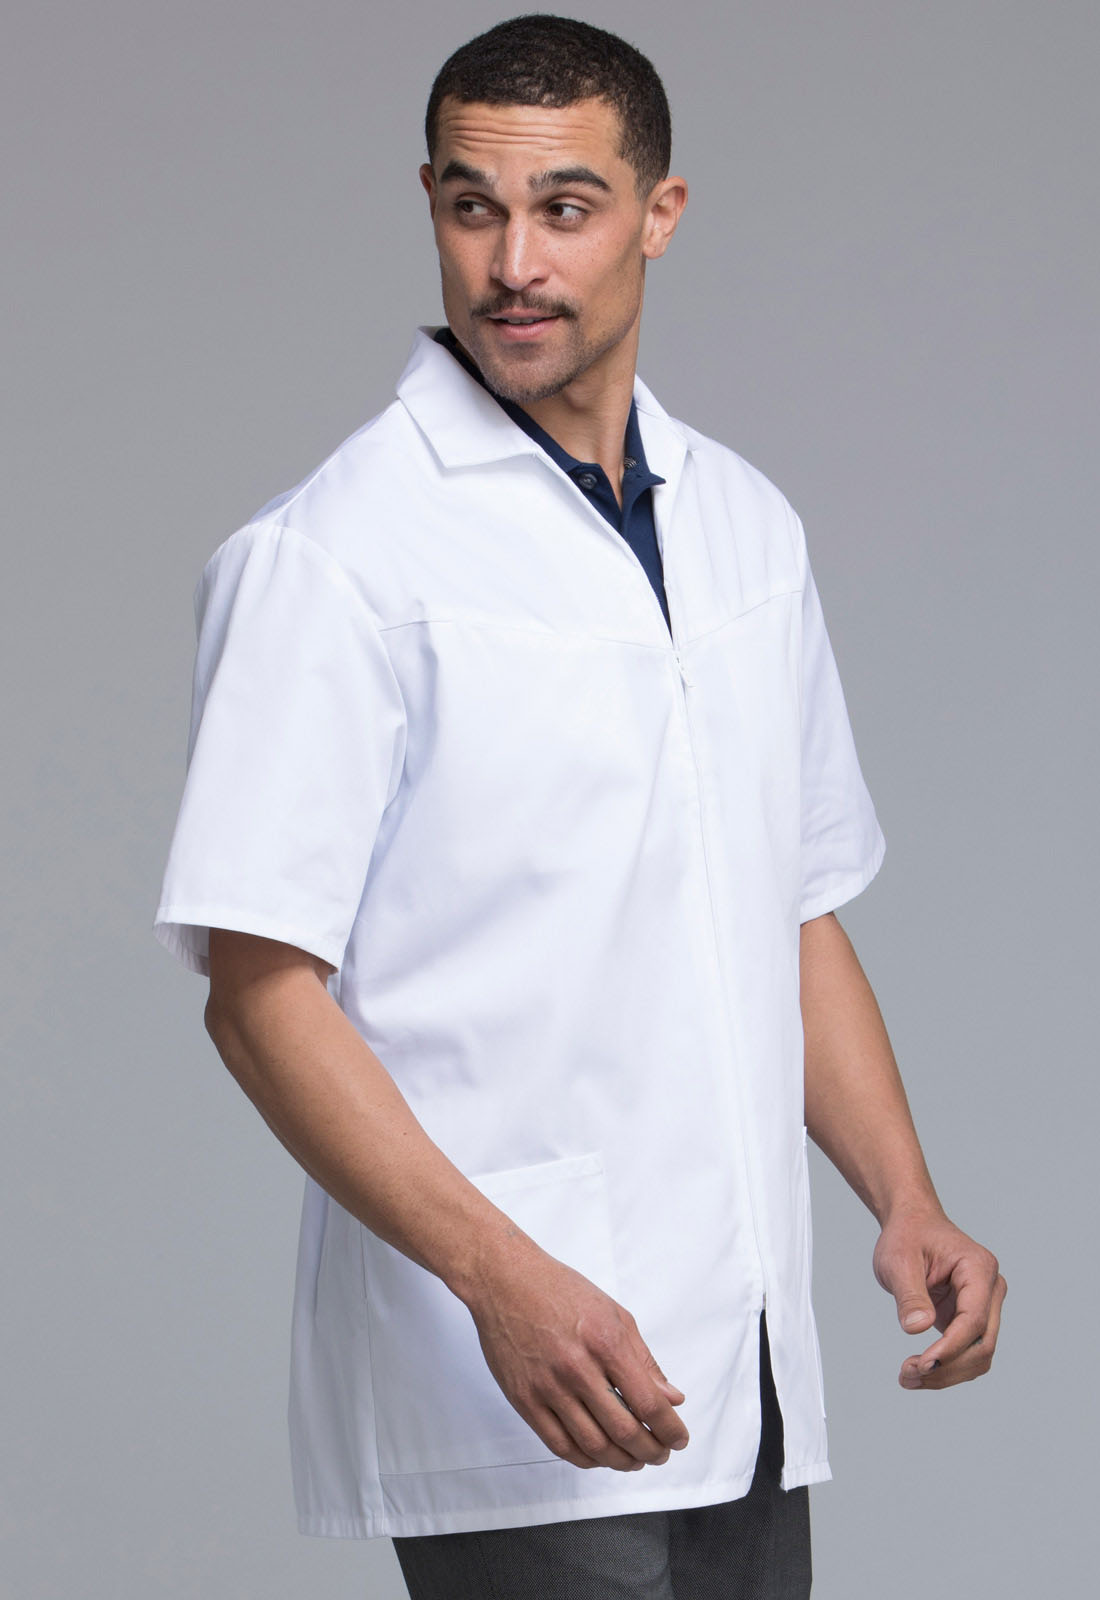 Белый халат медицинский мужской